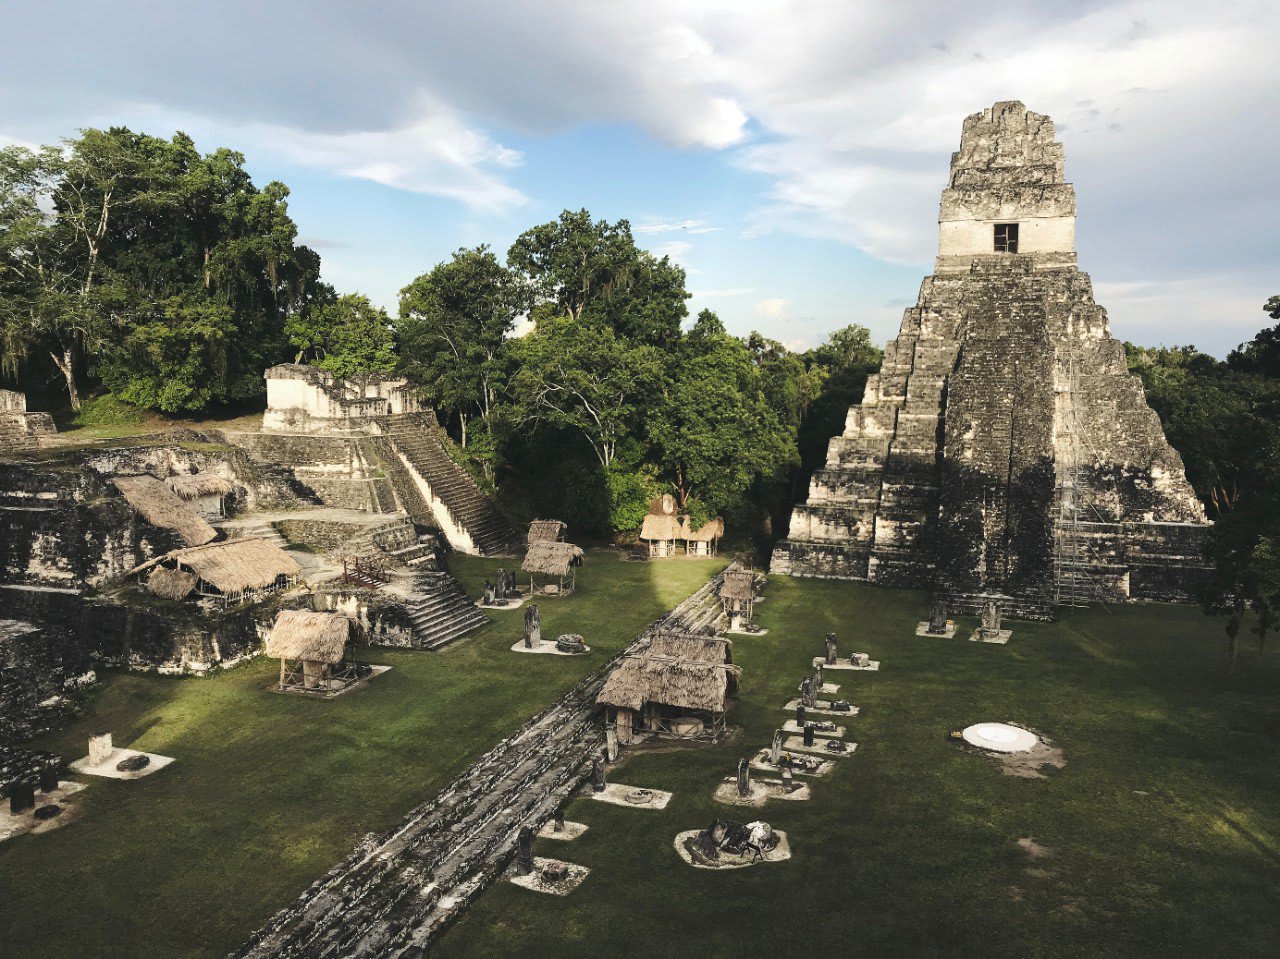 Why Did the Maya Abandon the Ancient City of Tikal?